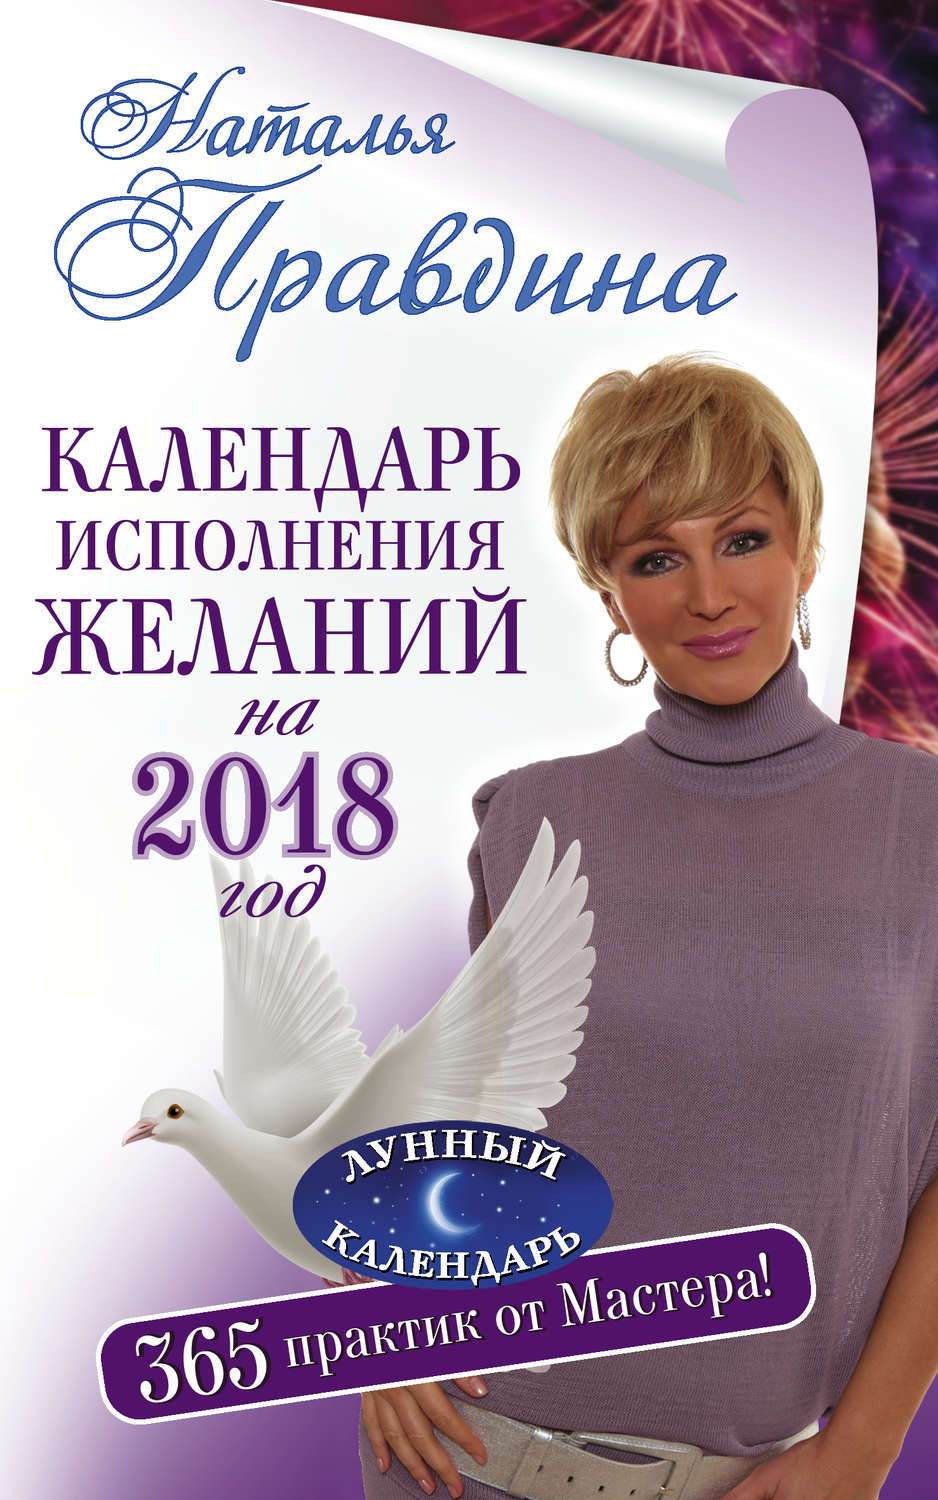 Наталья правдина книги скачать бесплатно 2018